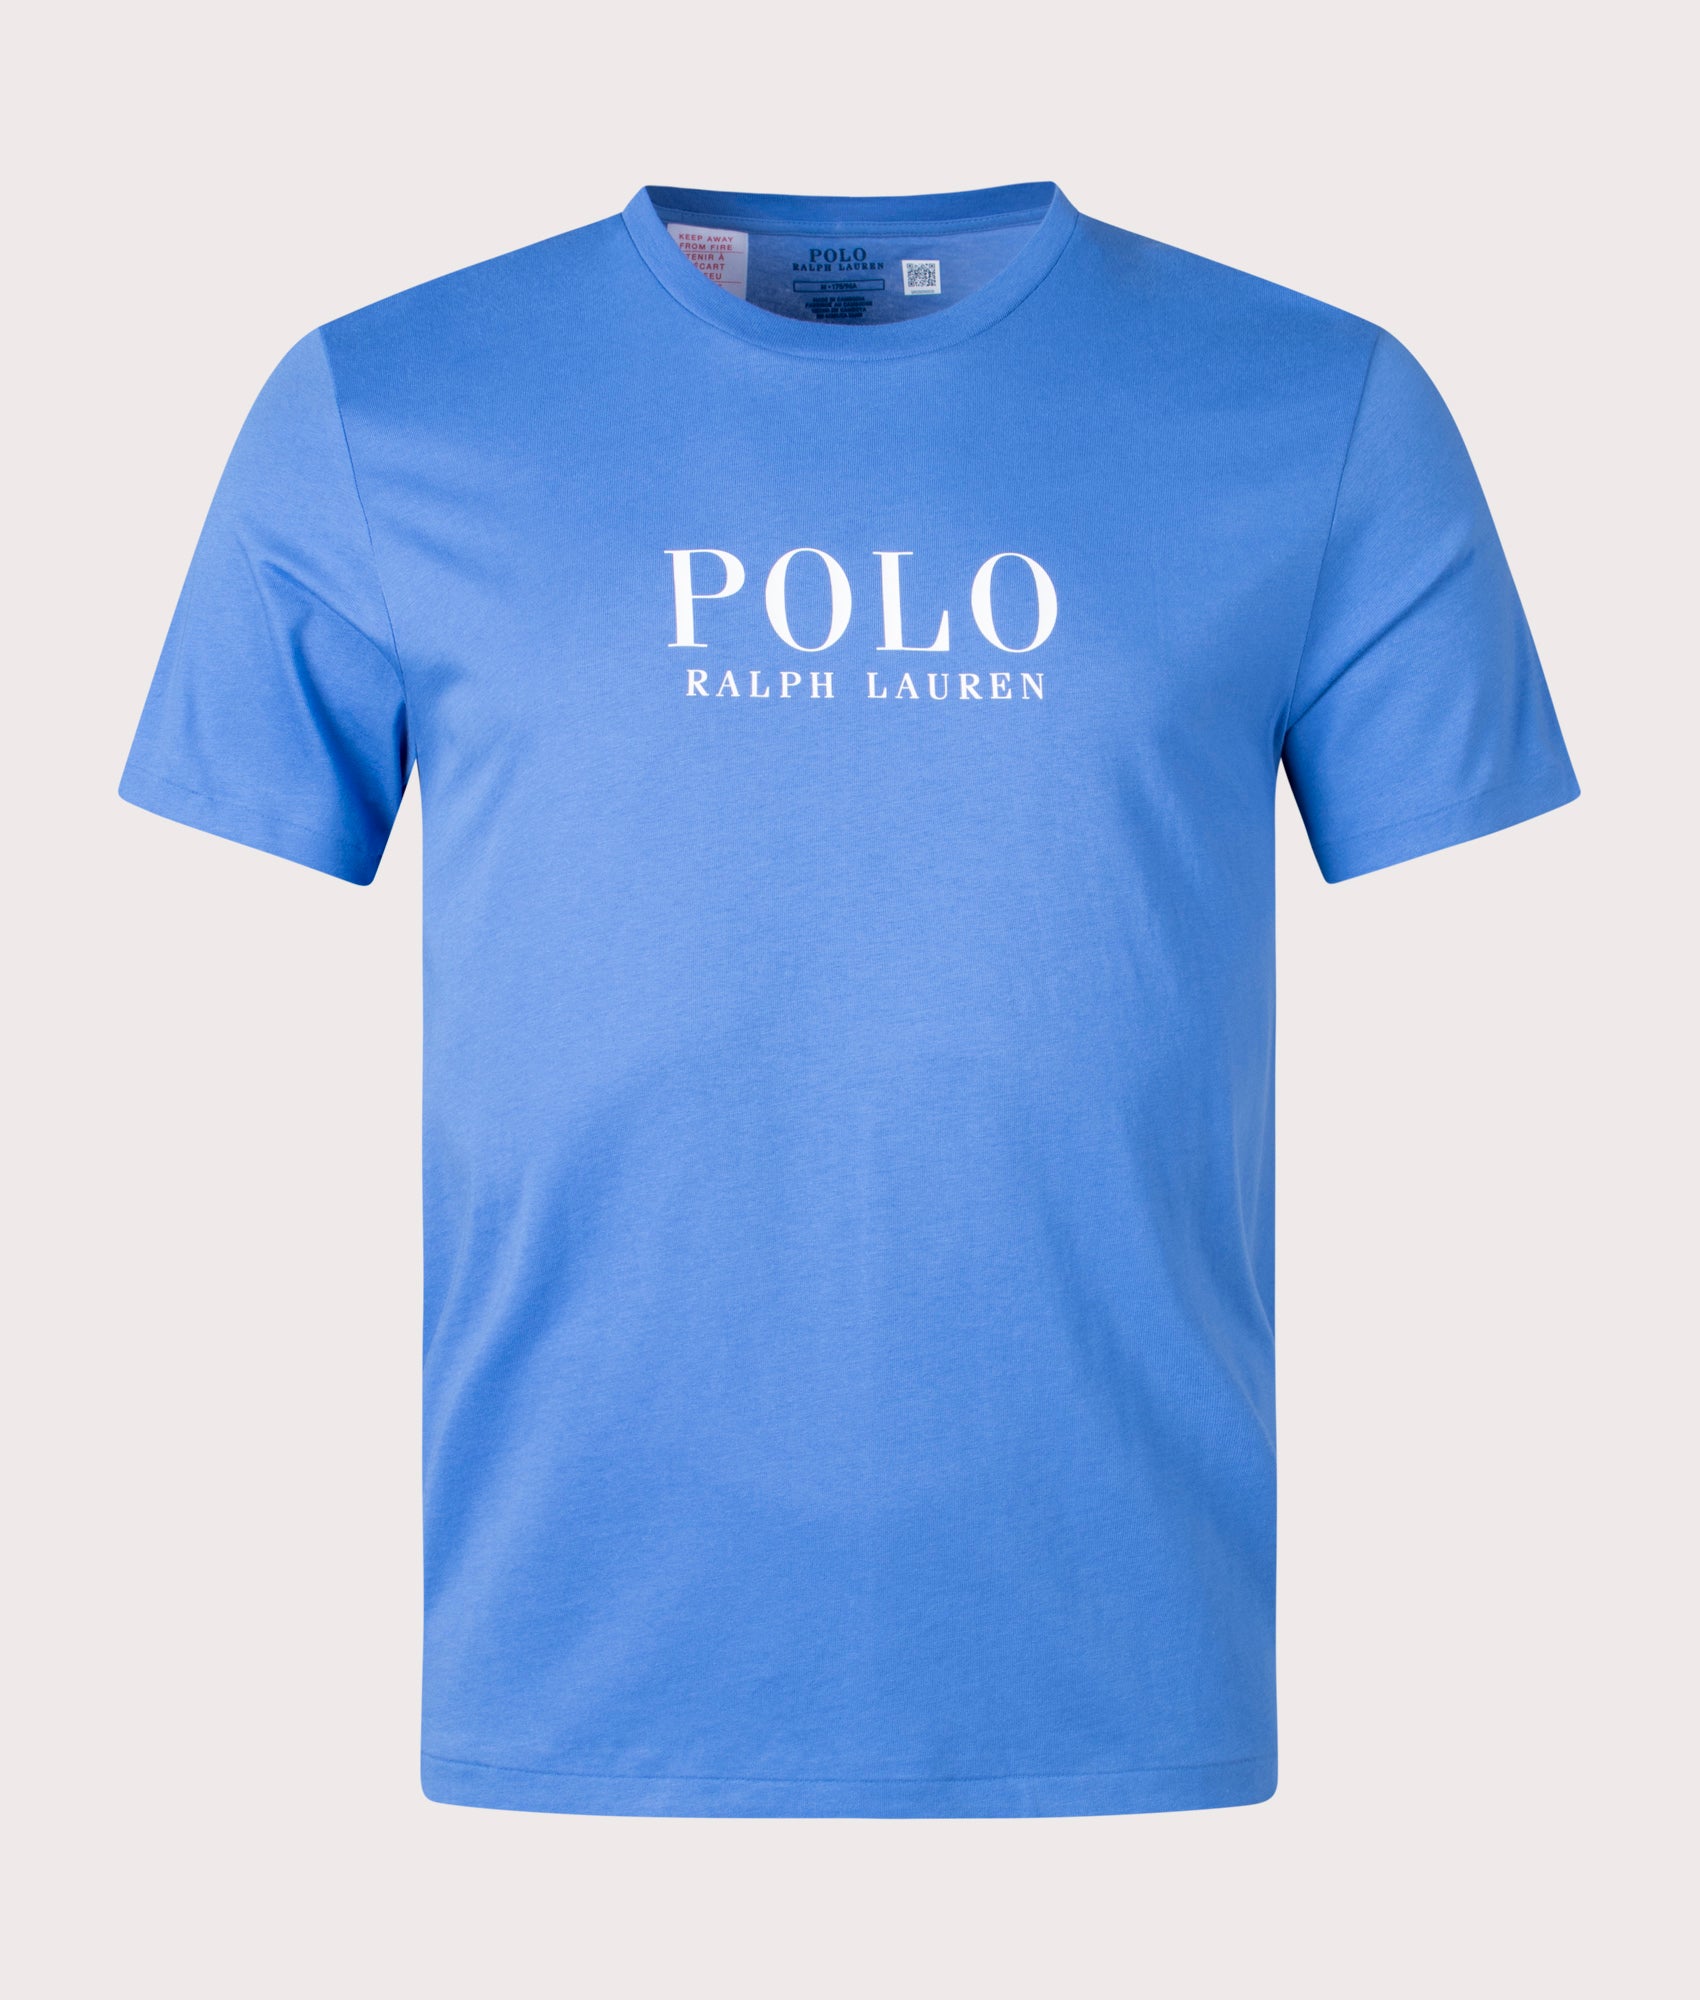 Polo Ralph Lauren Mens Lightweight Lounge T-Shirt - Colour: 014 New England Blue - Size: Small